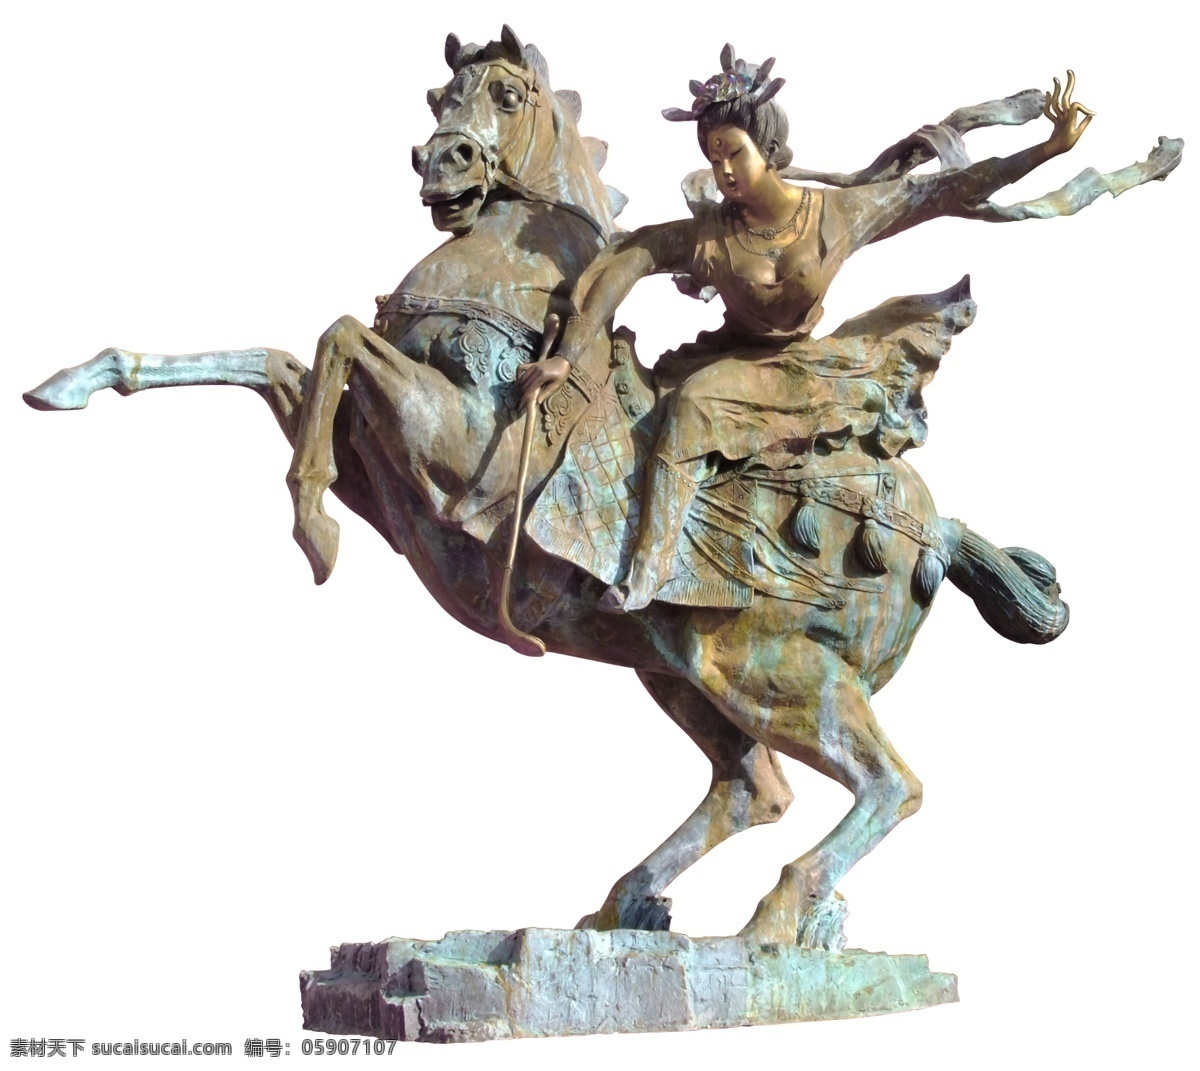 分层 雕塑 历史 马术 美女 骑马 骑士 体育 马 模板下载 马之雕塑 马球 娱乐 文化 源文件 psd源文件